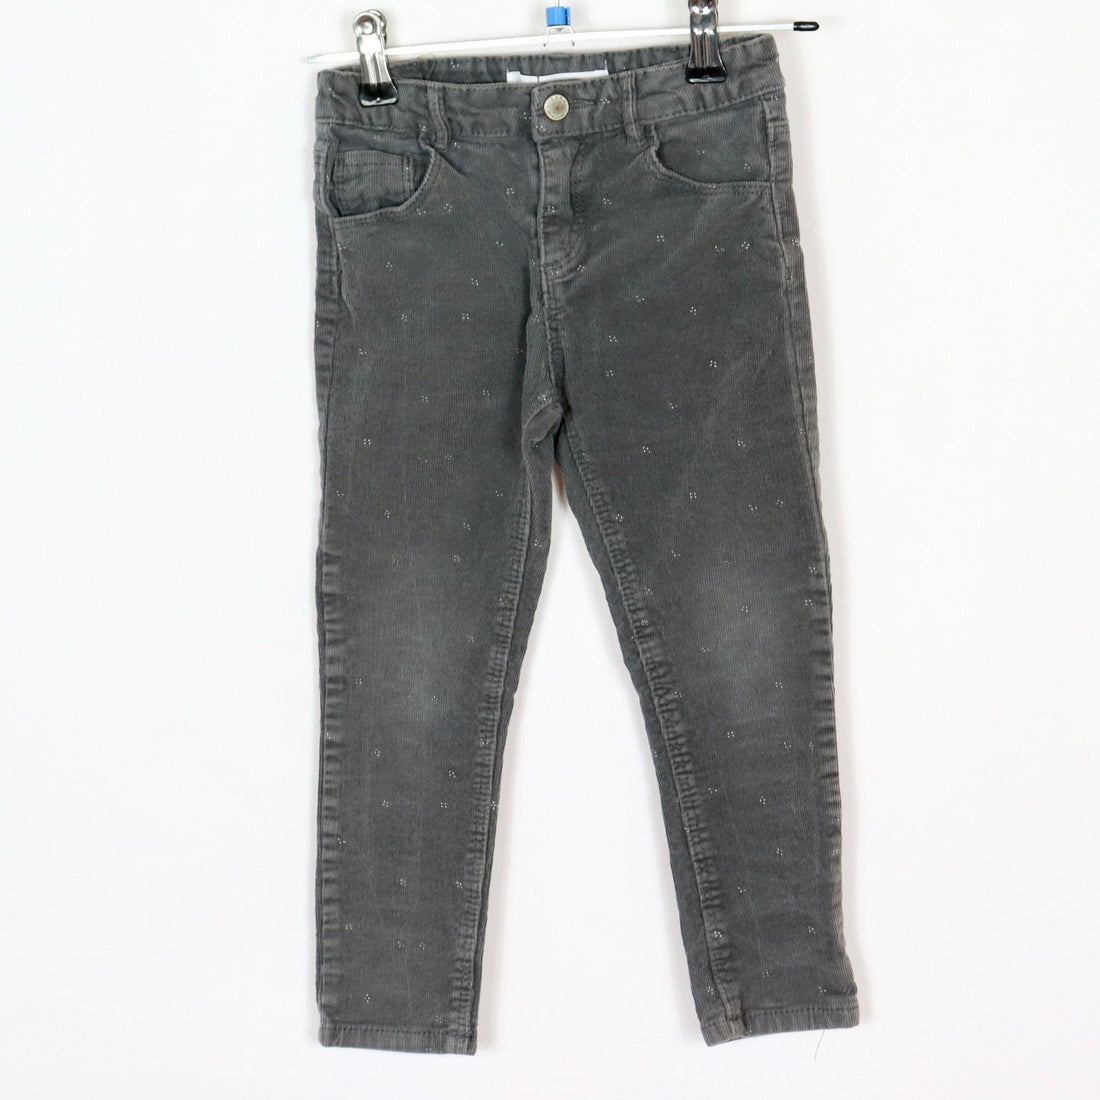 Jeans - Zara - 110 - grau - sehr guter Zustand